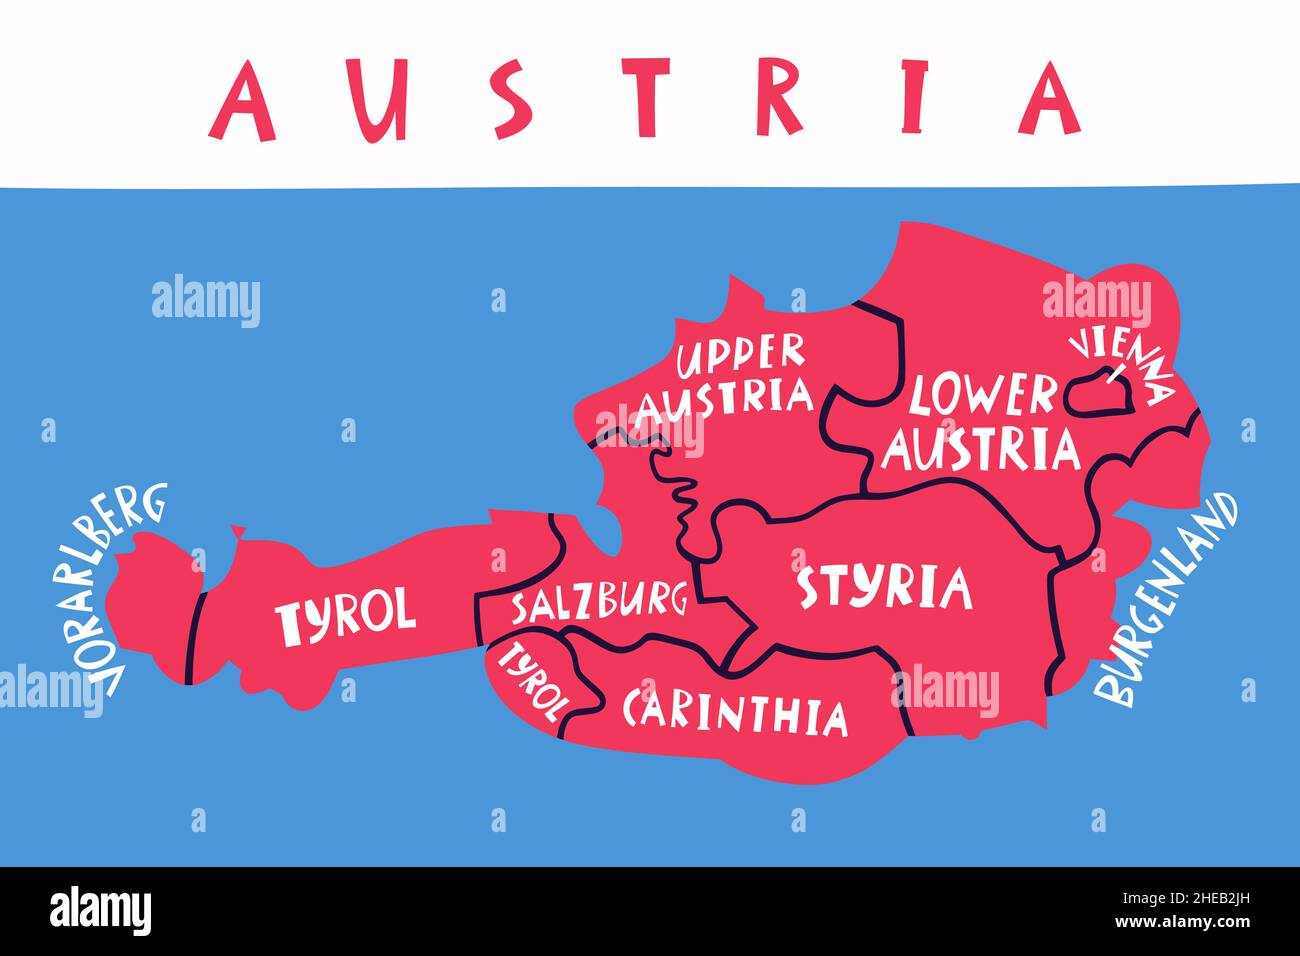 Vektor Hand gezeichnete stilisierte Karte der österreichischen Regionen. Reiseabbildung. Darstellung der Geographie der Republik Österreich. Europa-MAP-Element Stock Vektor